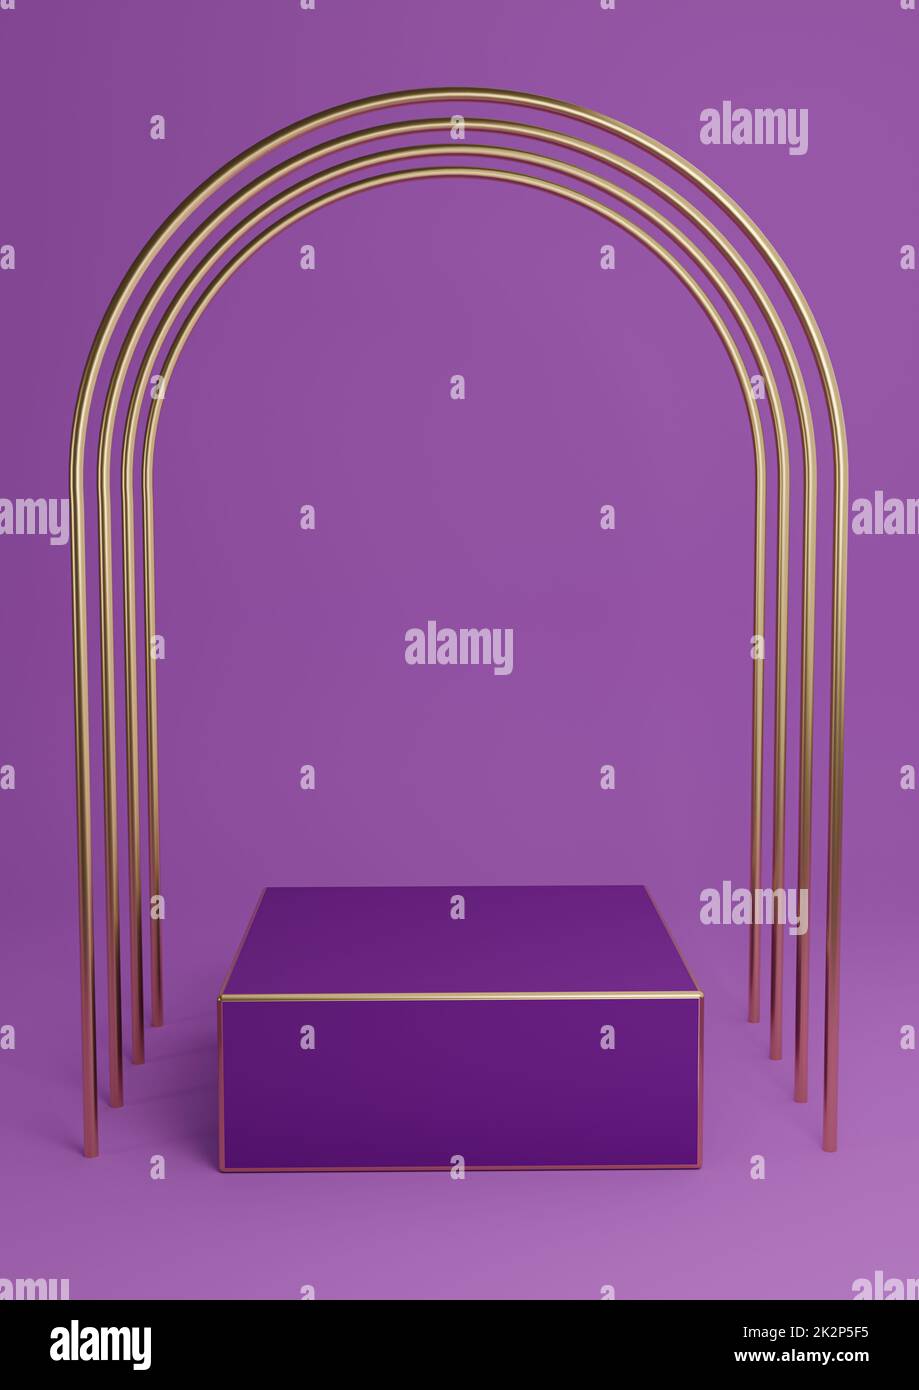 Leuchtendes Lila, violett, 3D-Darstellung für minimales Produktdisplay, Würfeltreppchen oder Ständer mit luxuriösen goldenen Bögen und goldenen Linien. Einfache abstrakte Hintergrundkomposition. Stockfoto